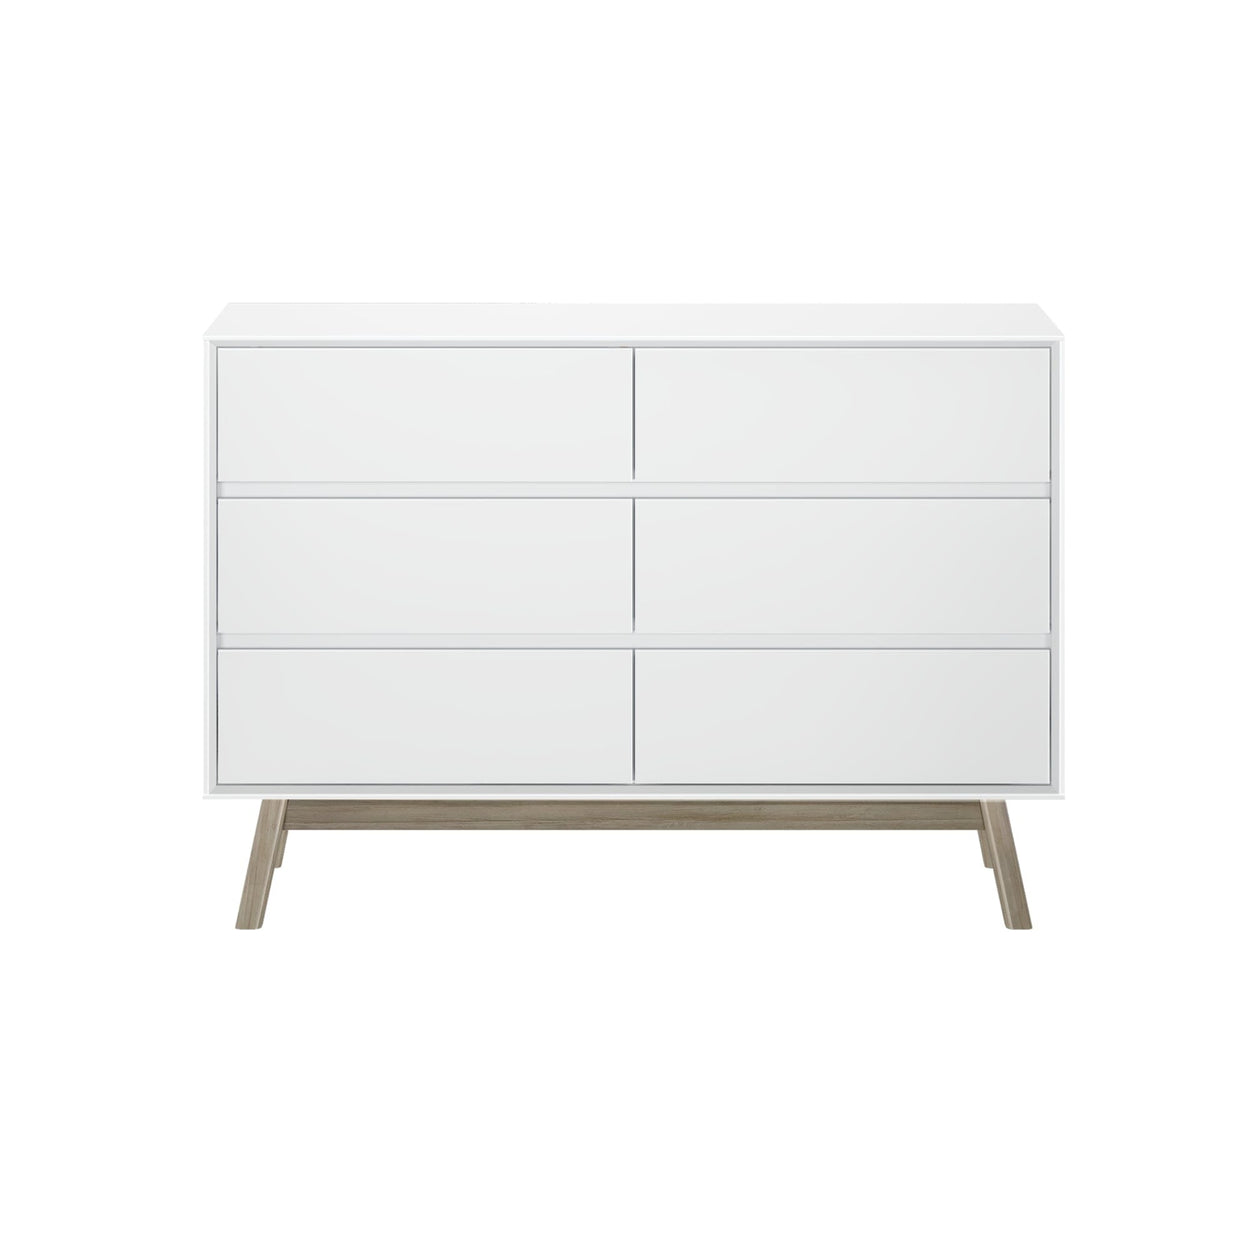 200006-202 : Furniture Mid-Century Modern 6-Drawer Dresser, White/Blonde